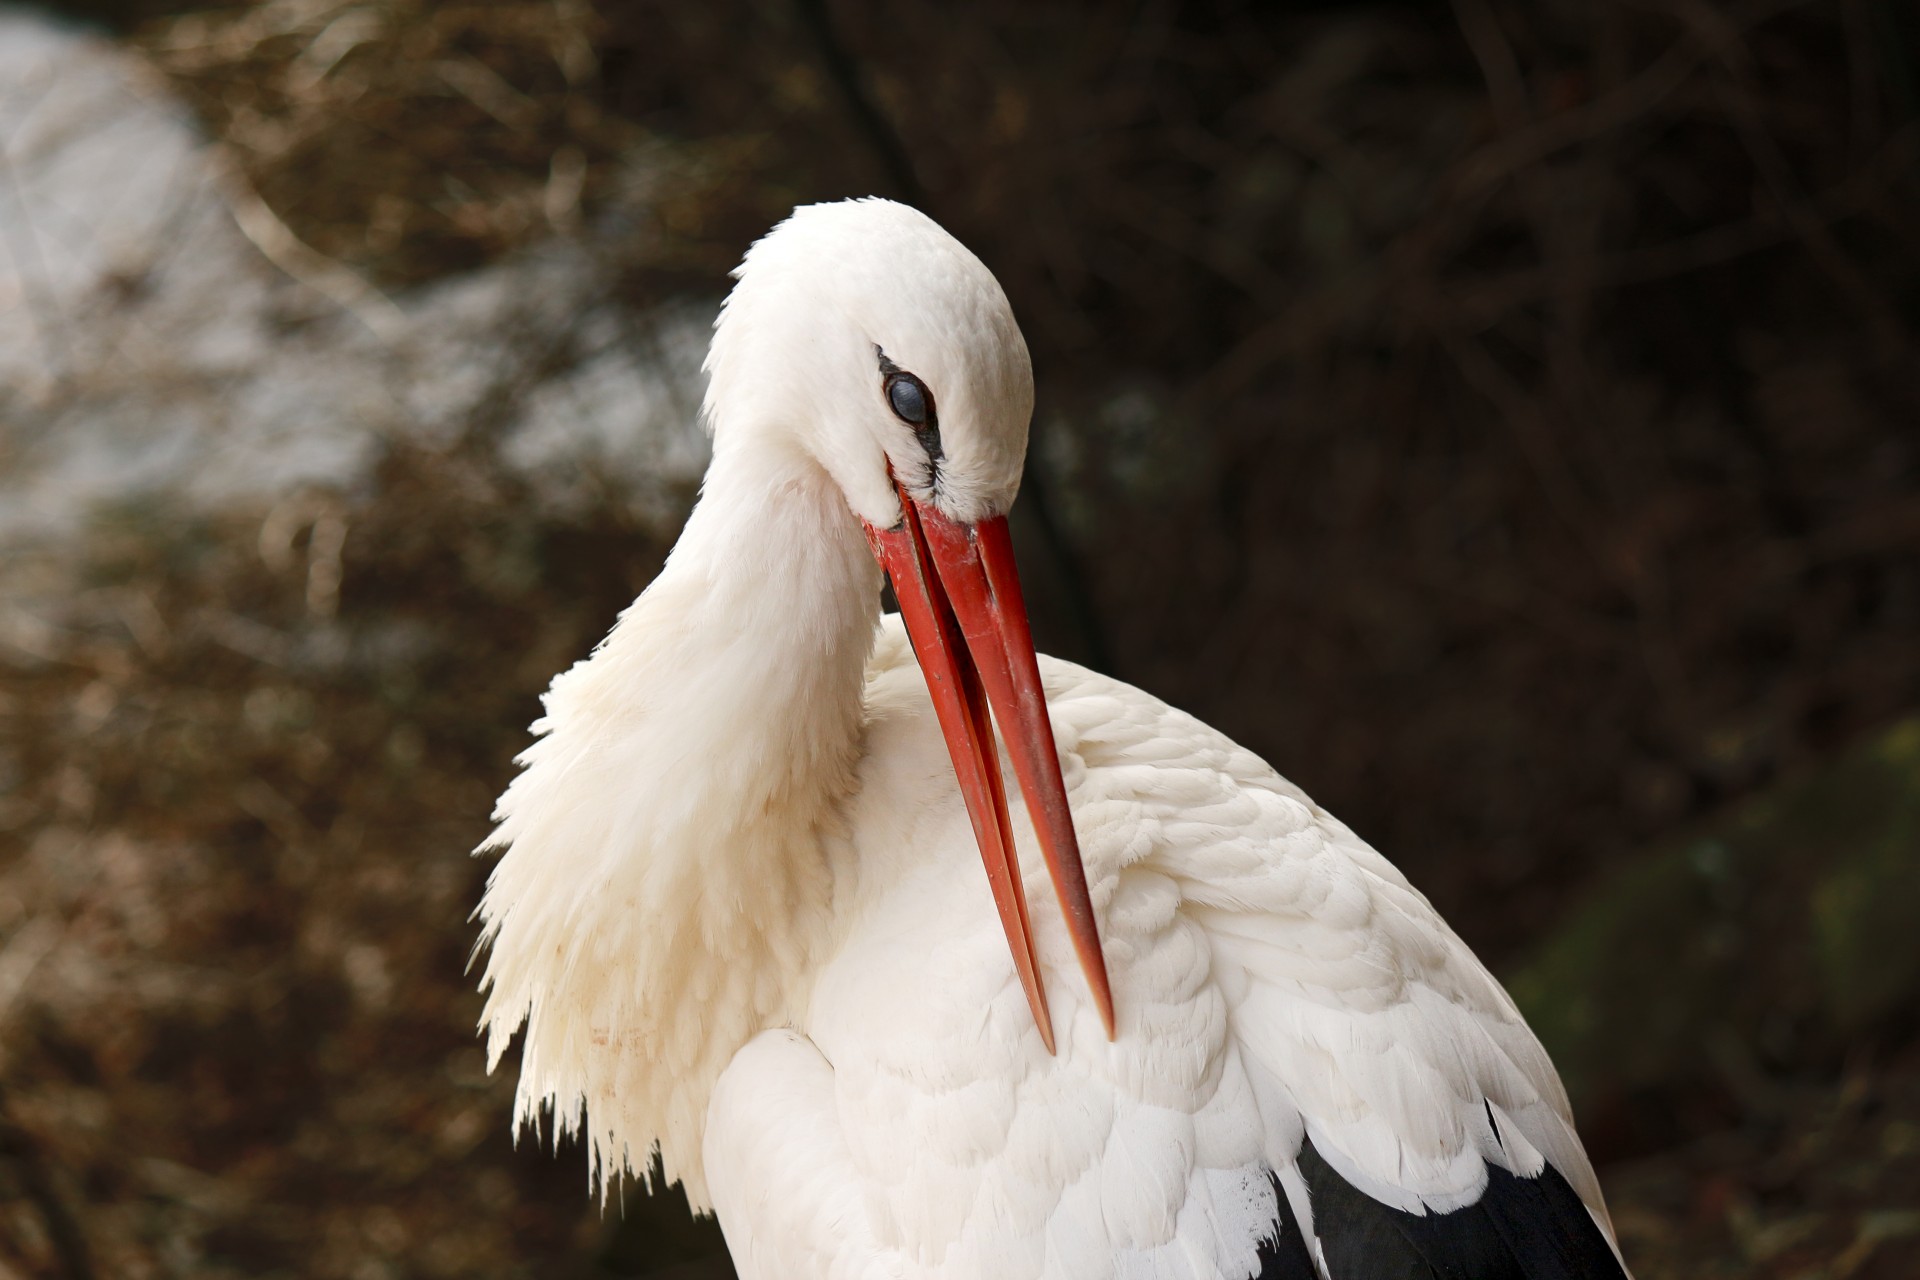 White Stork Preening